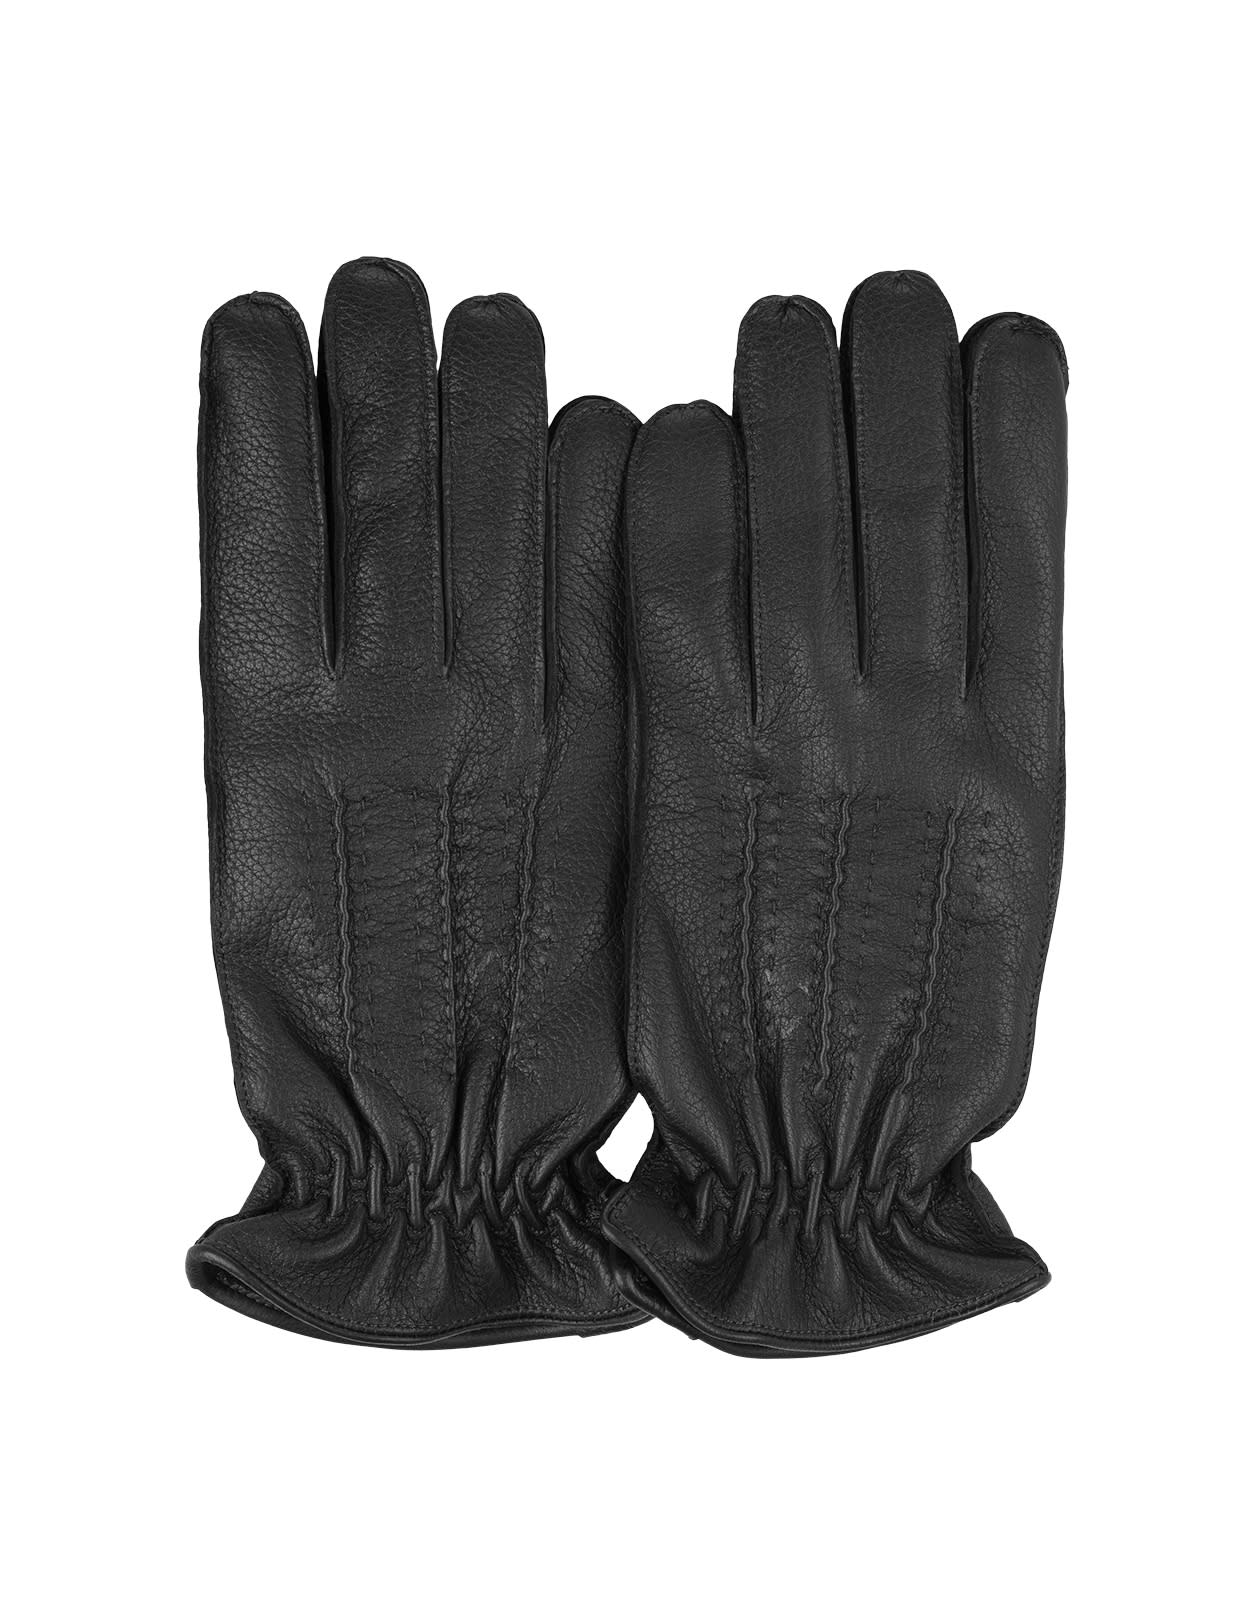 Drummed Gloves In Black Leather